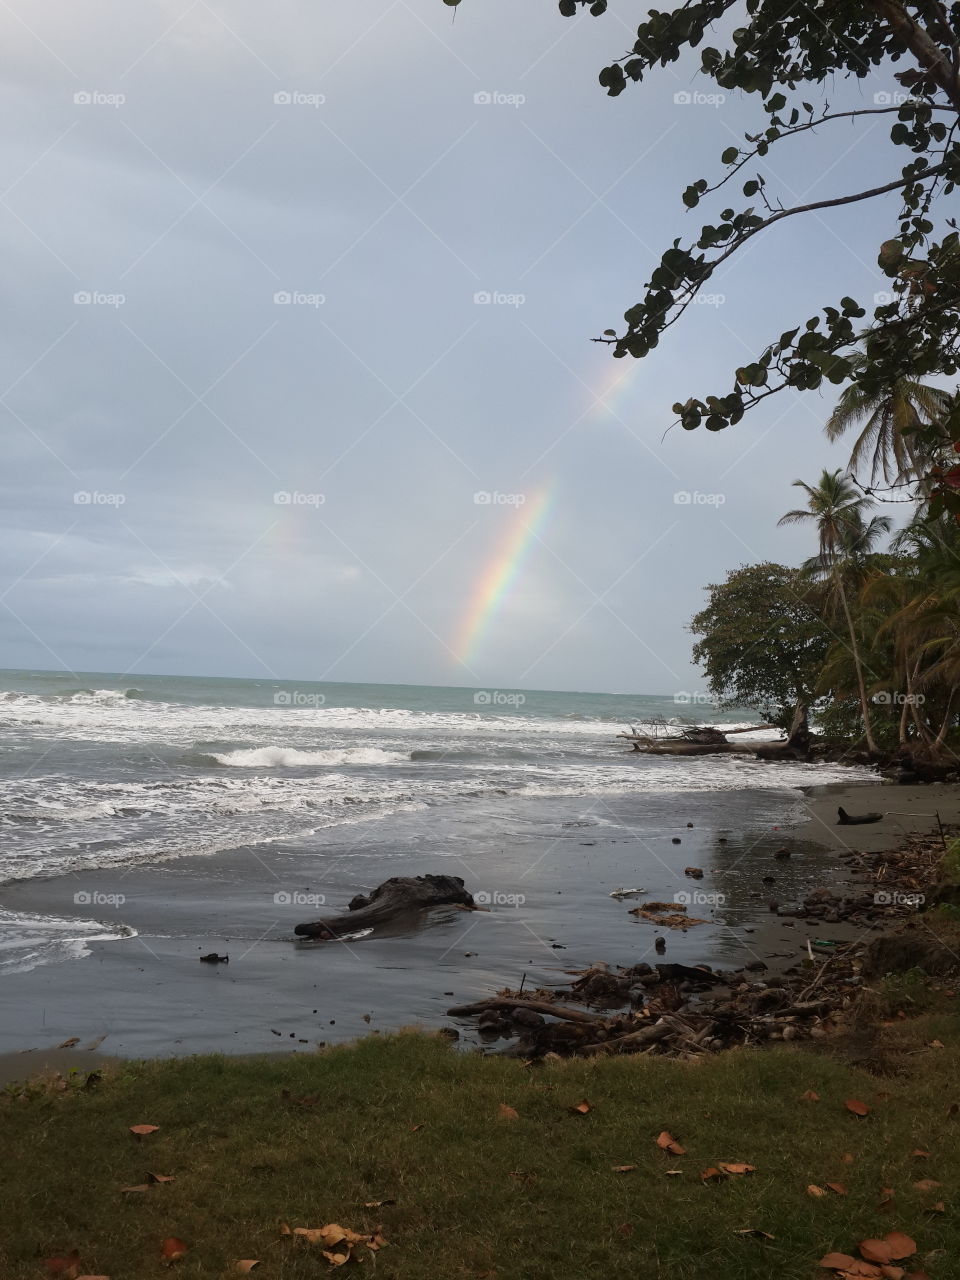 Rainbow at the beach. tropical rainbow